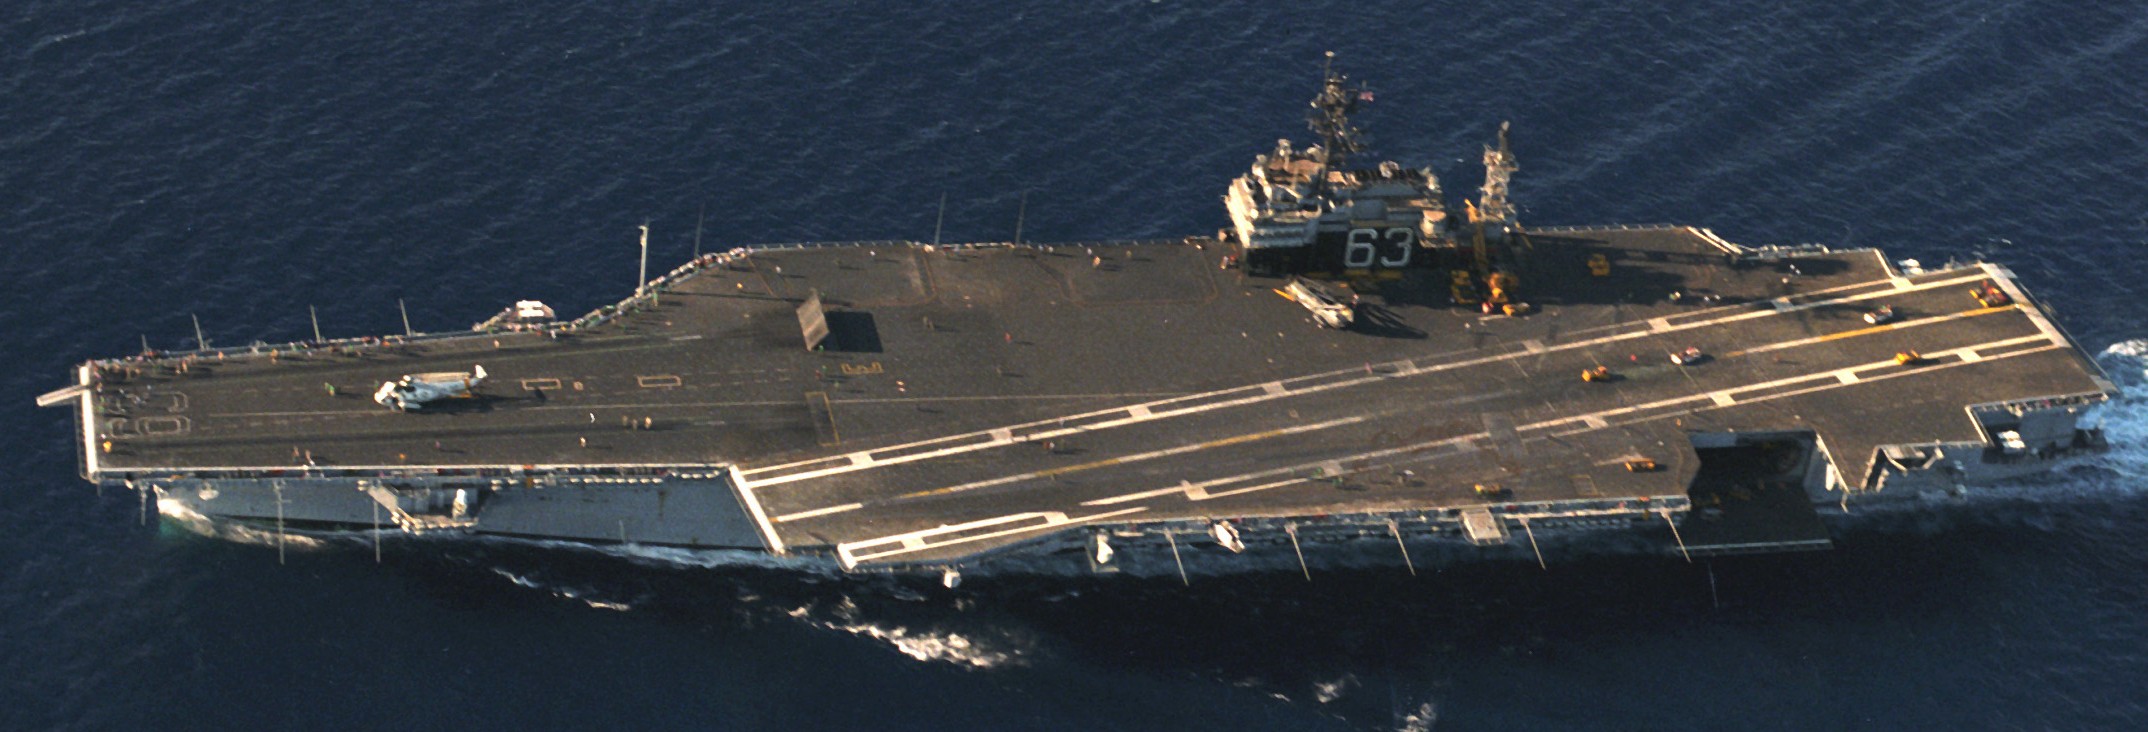 cv-63 uss kitty hawk aircraft carrier 455